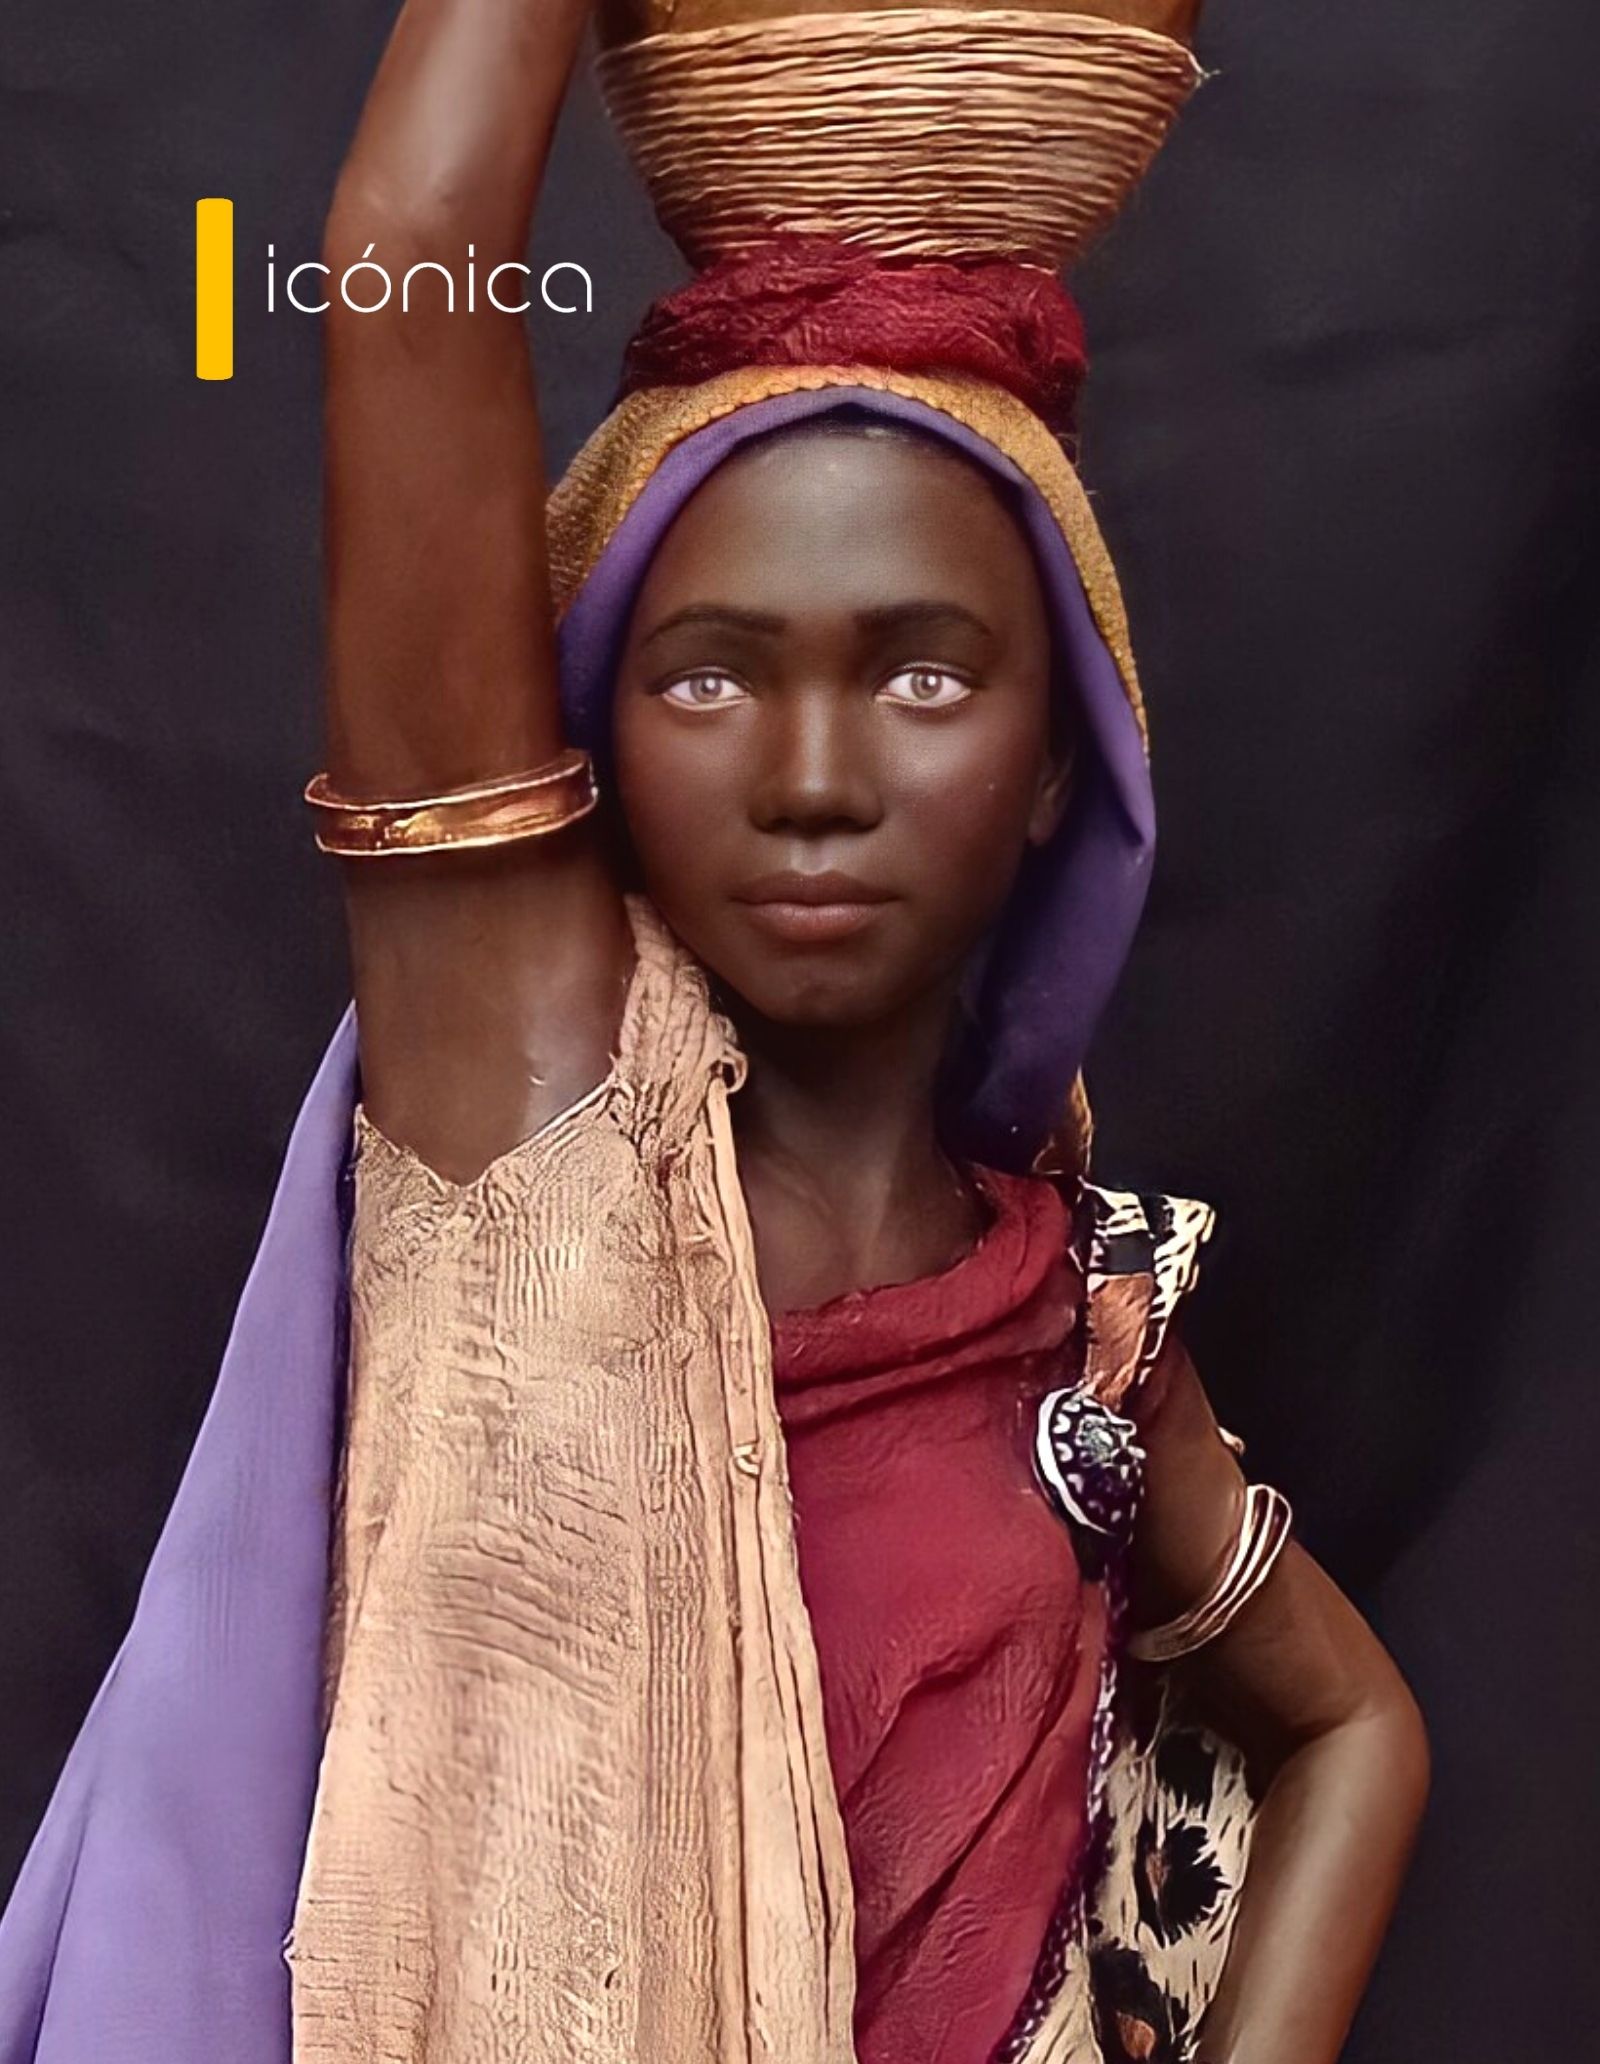 Pastora africana con cántara en la cabeza (2021). 35cm. Córdoba.